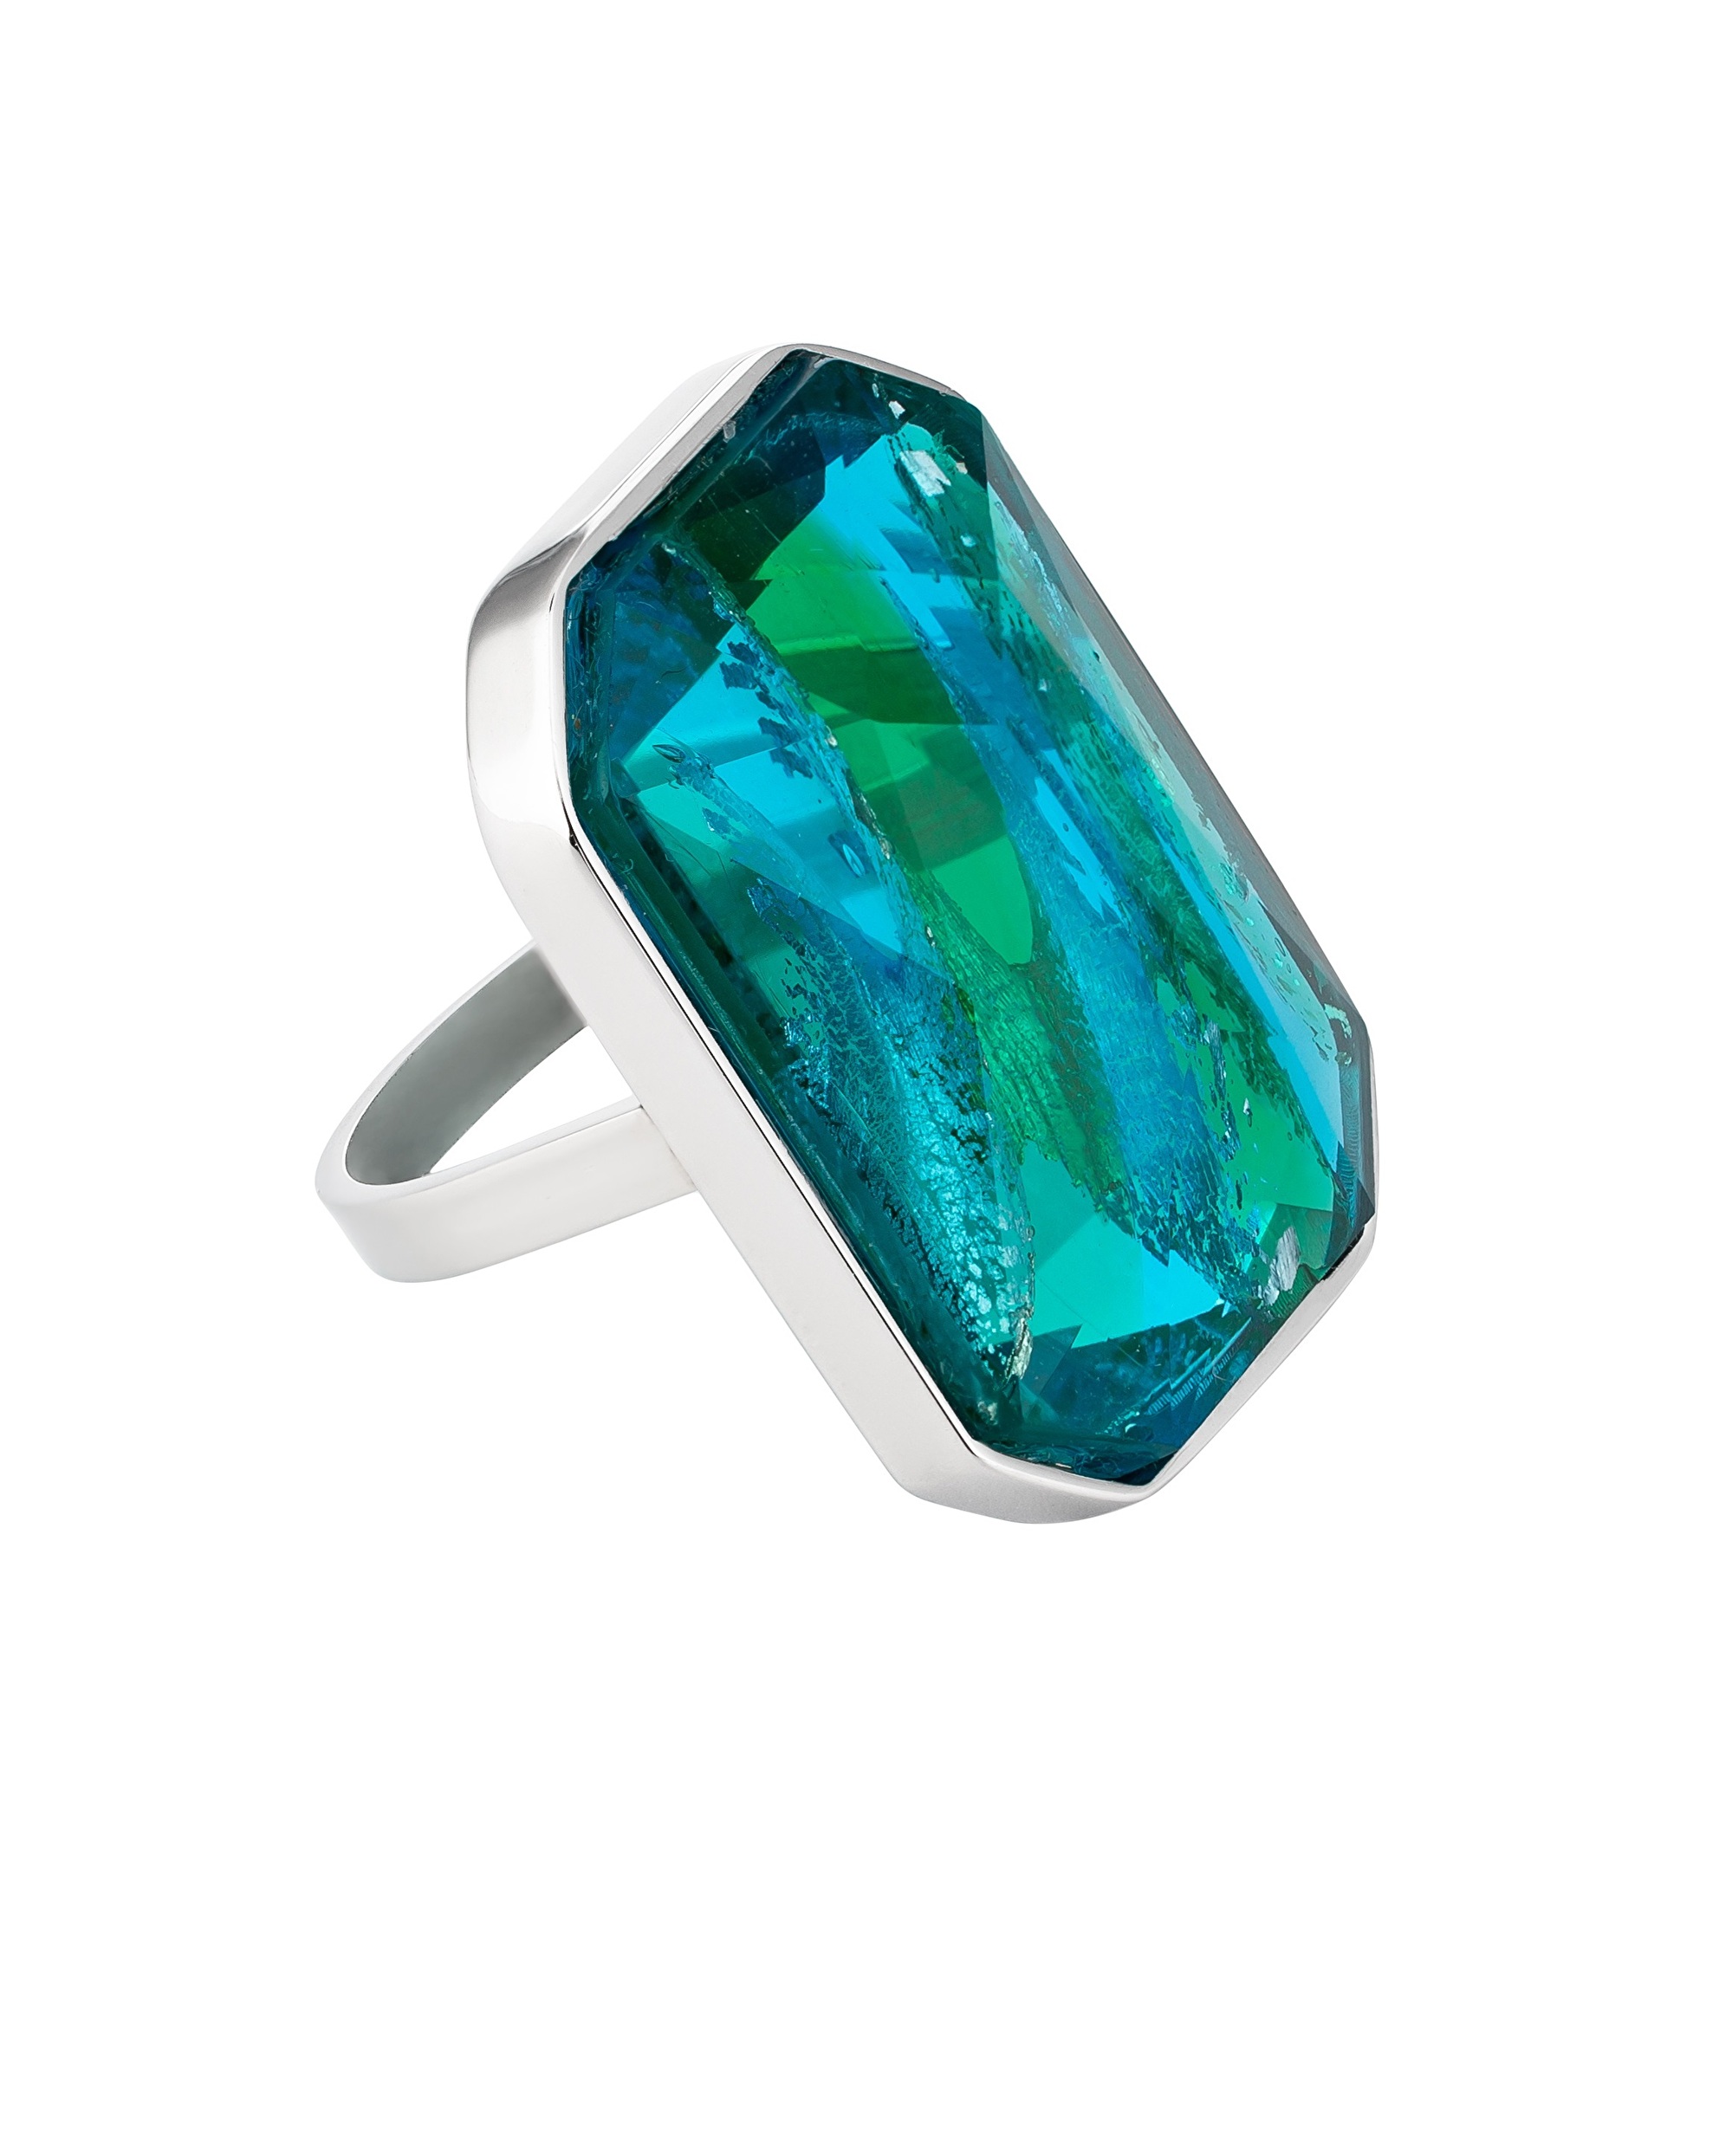 Preciosa Luxusní ocelový prsten s ručně mačkaným kamenem českého křišťálu Preciosa Ocean Emerald 7446 66 53 mm